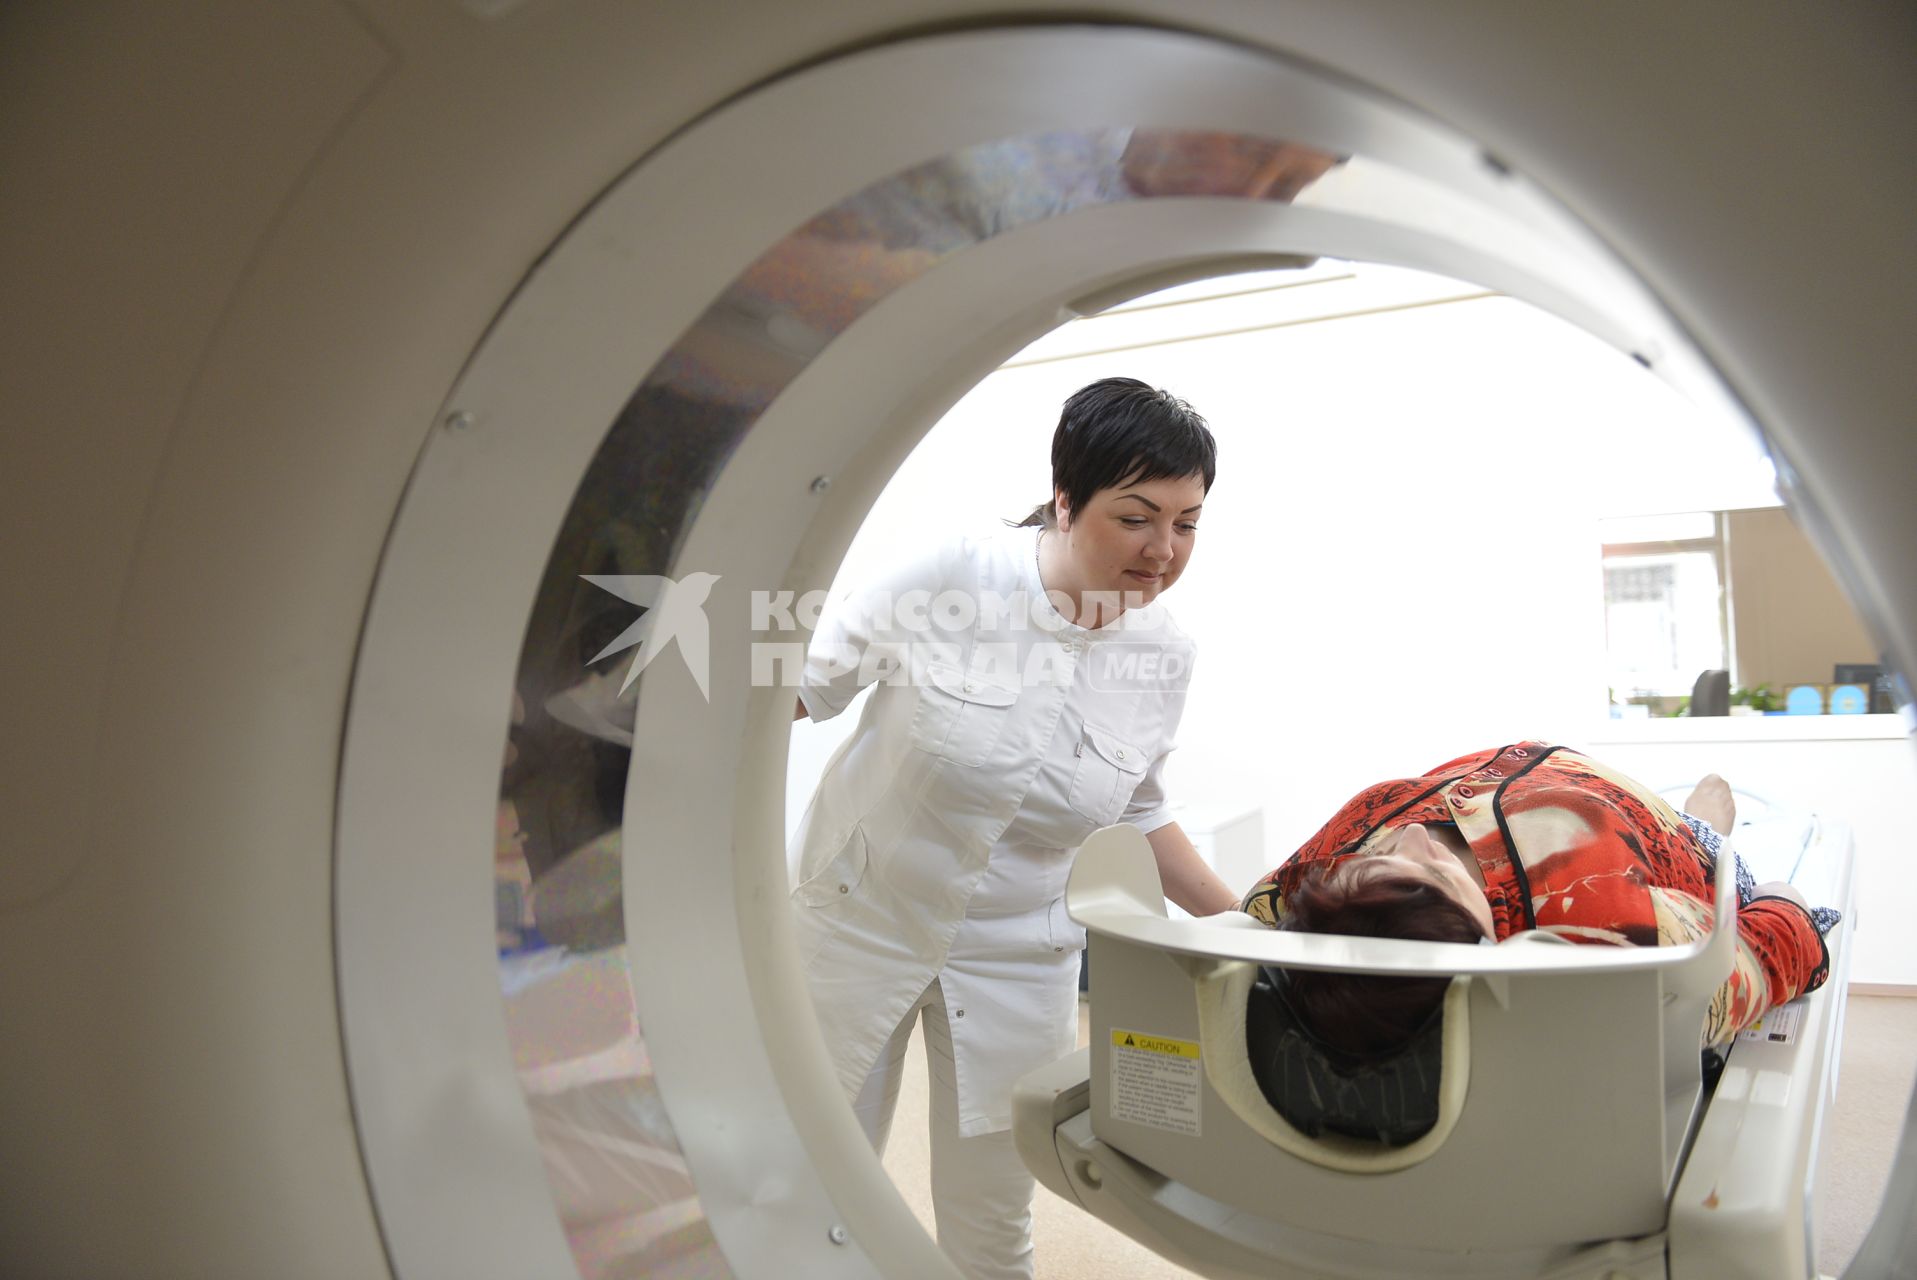 Тула.  Пациентка во время рентгеновской компьютерной томографии  в одной из больниц города.